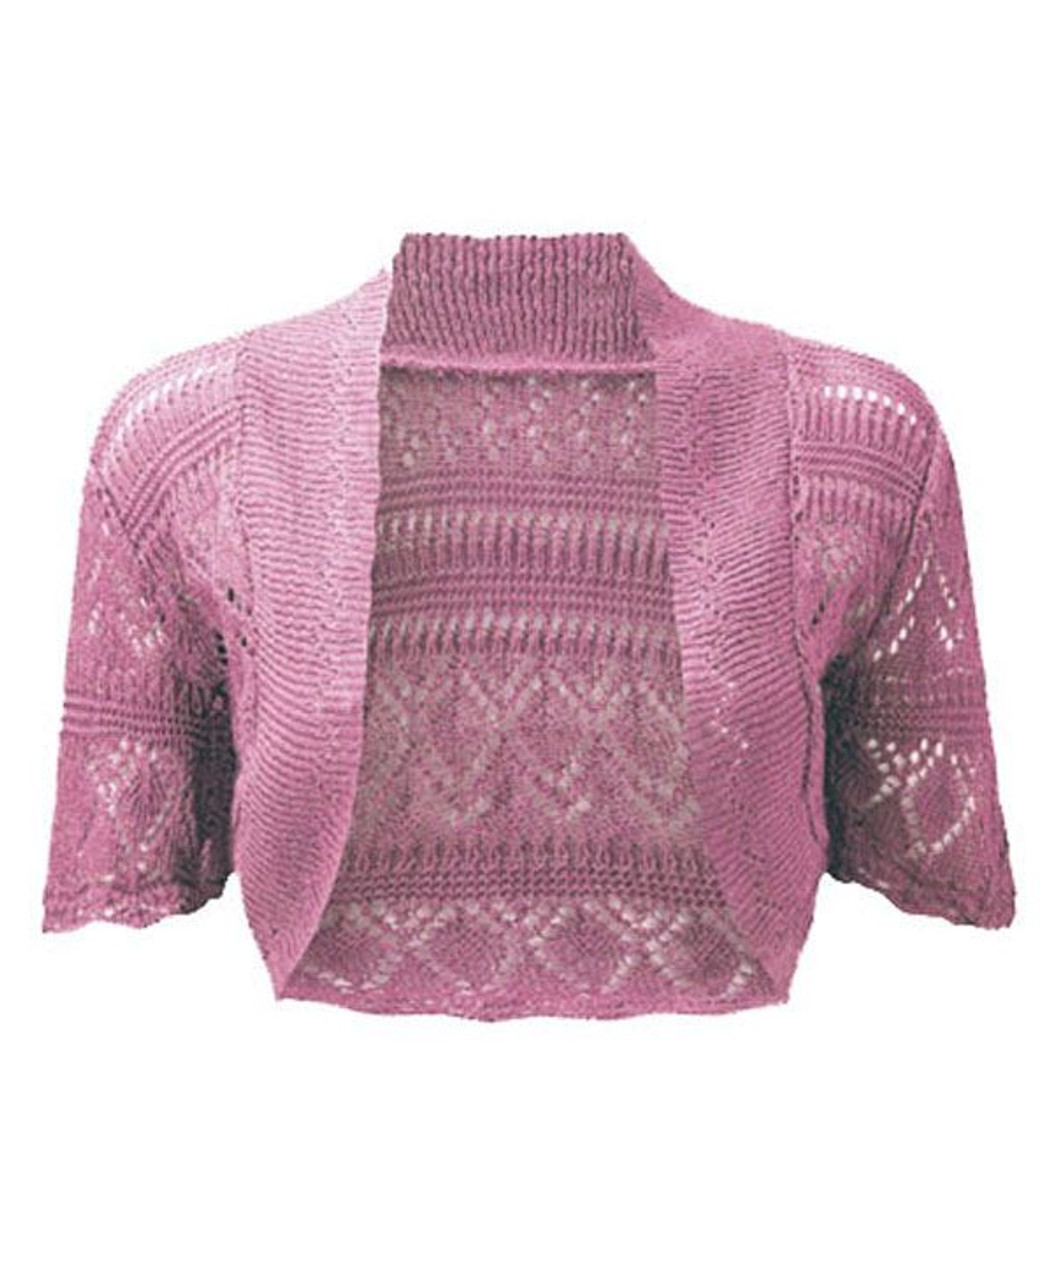 Crochet Knitted Bolero Shrug In Pink 